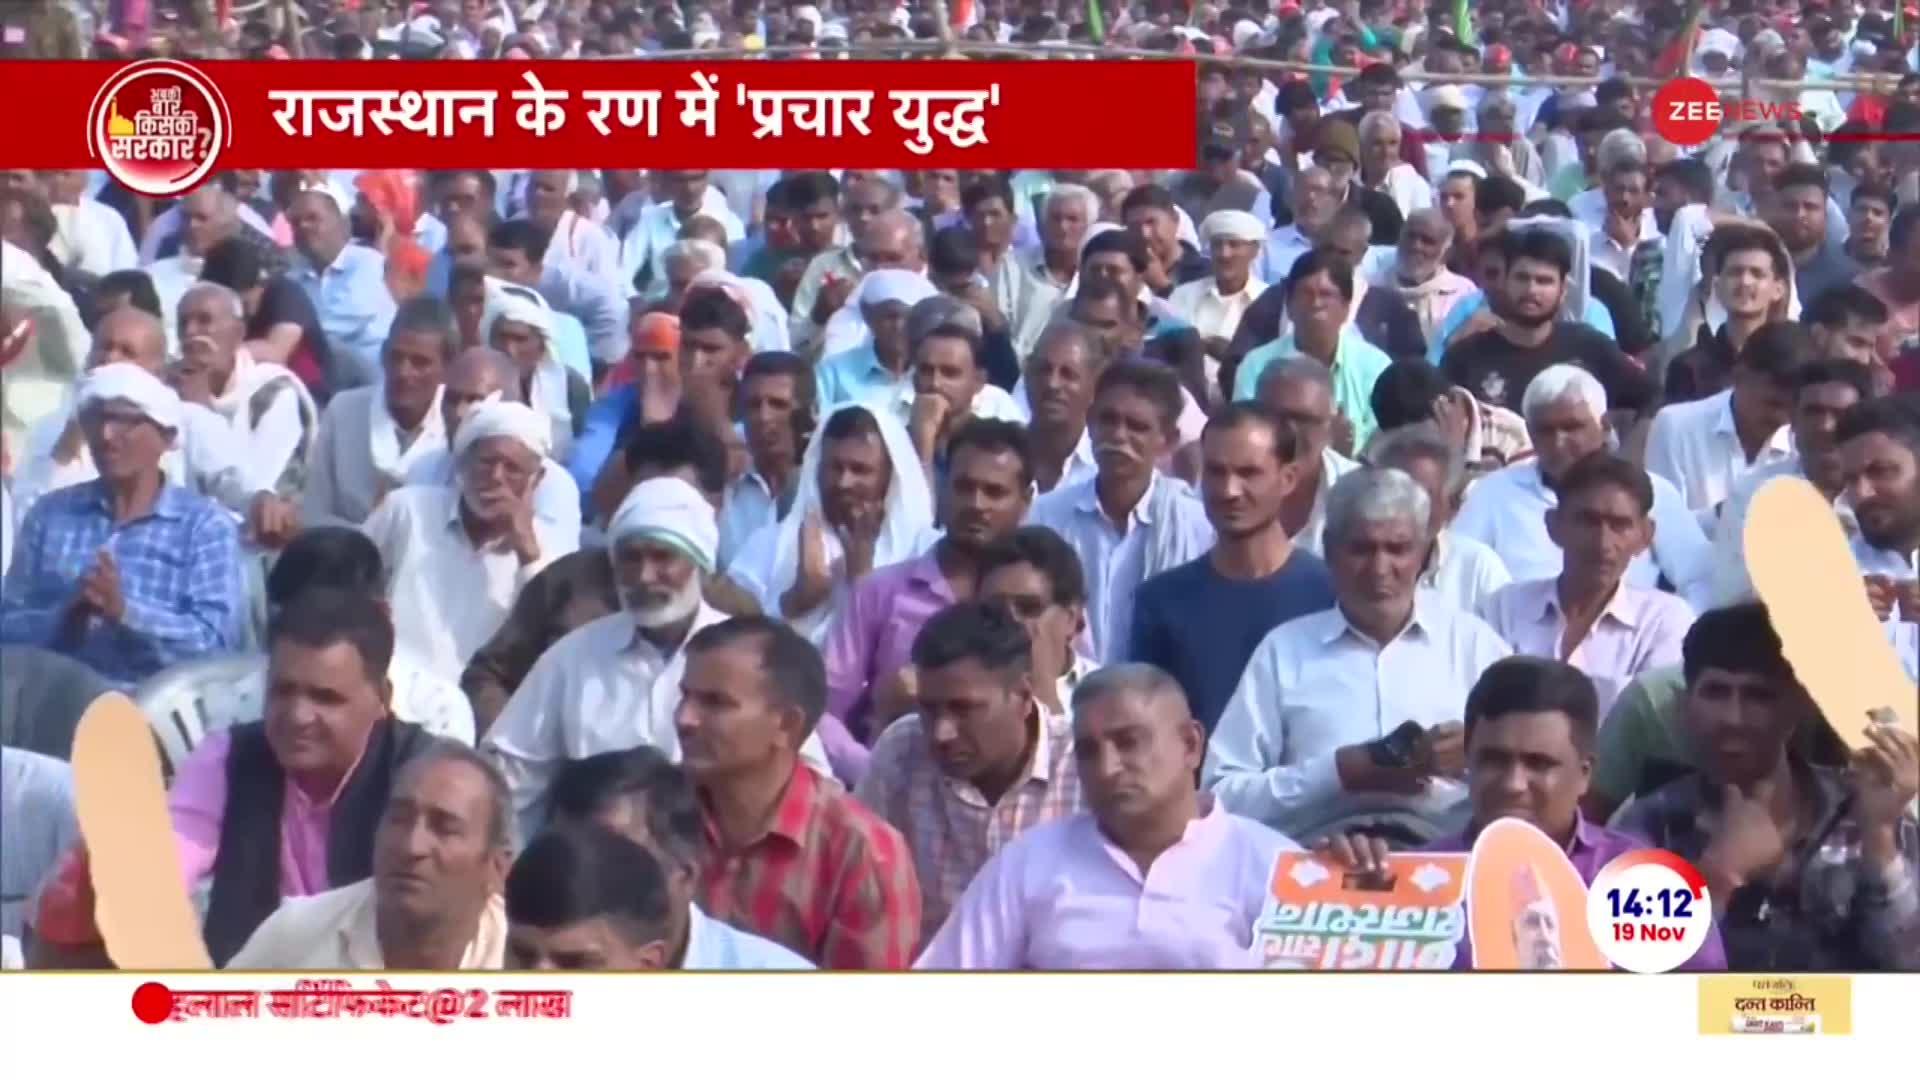 PM Modi Rajasthan LIVE: राजस्थान के रण में मोदी का प्रचार युद्ध